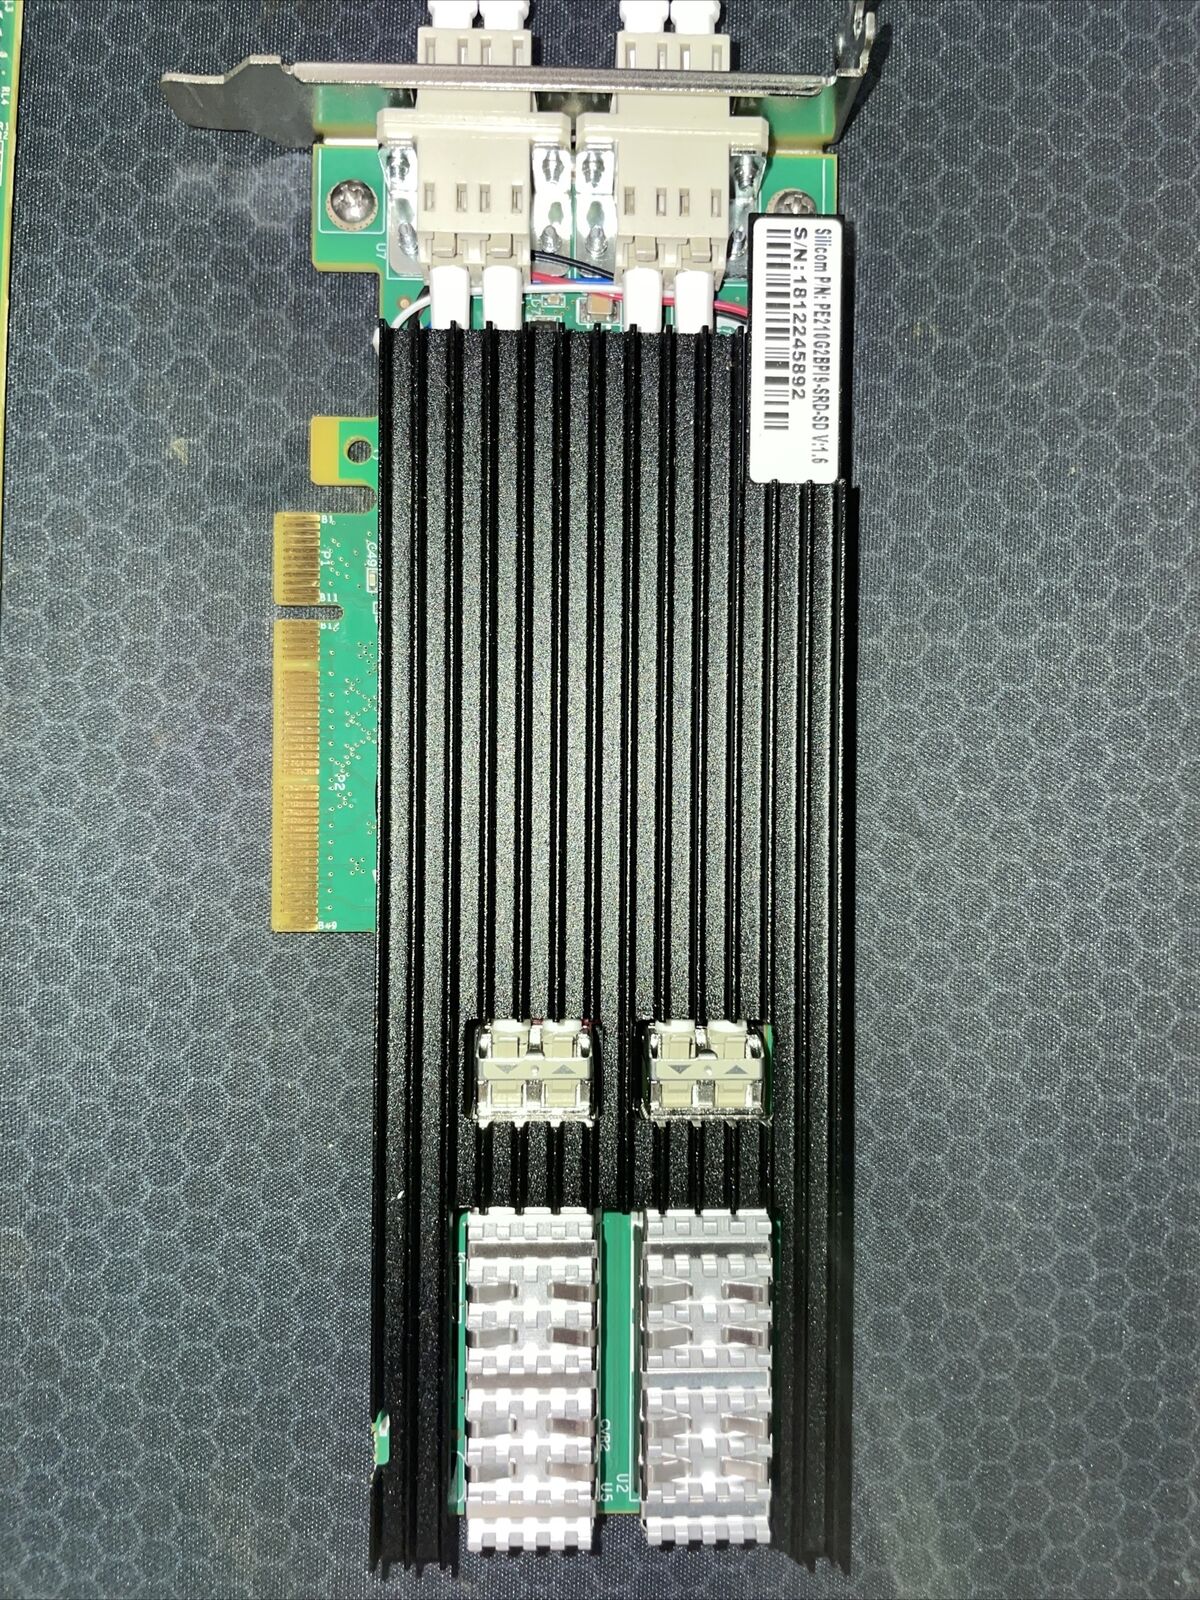 Silicom dual port fiber 10GbE  network card  PE210G2BPI9-SRD-SD v1.5